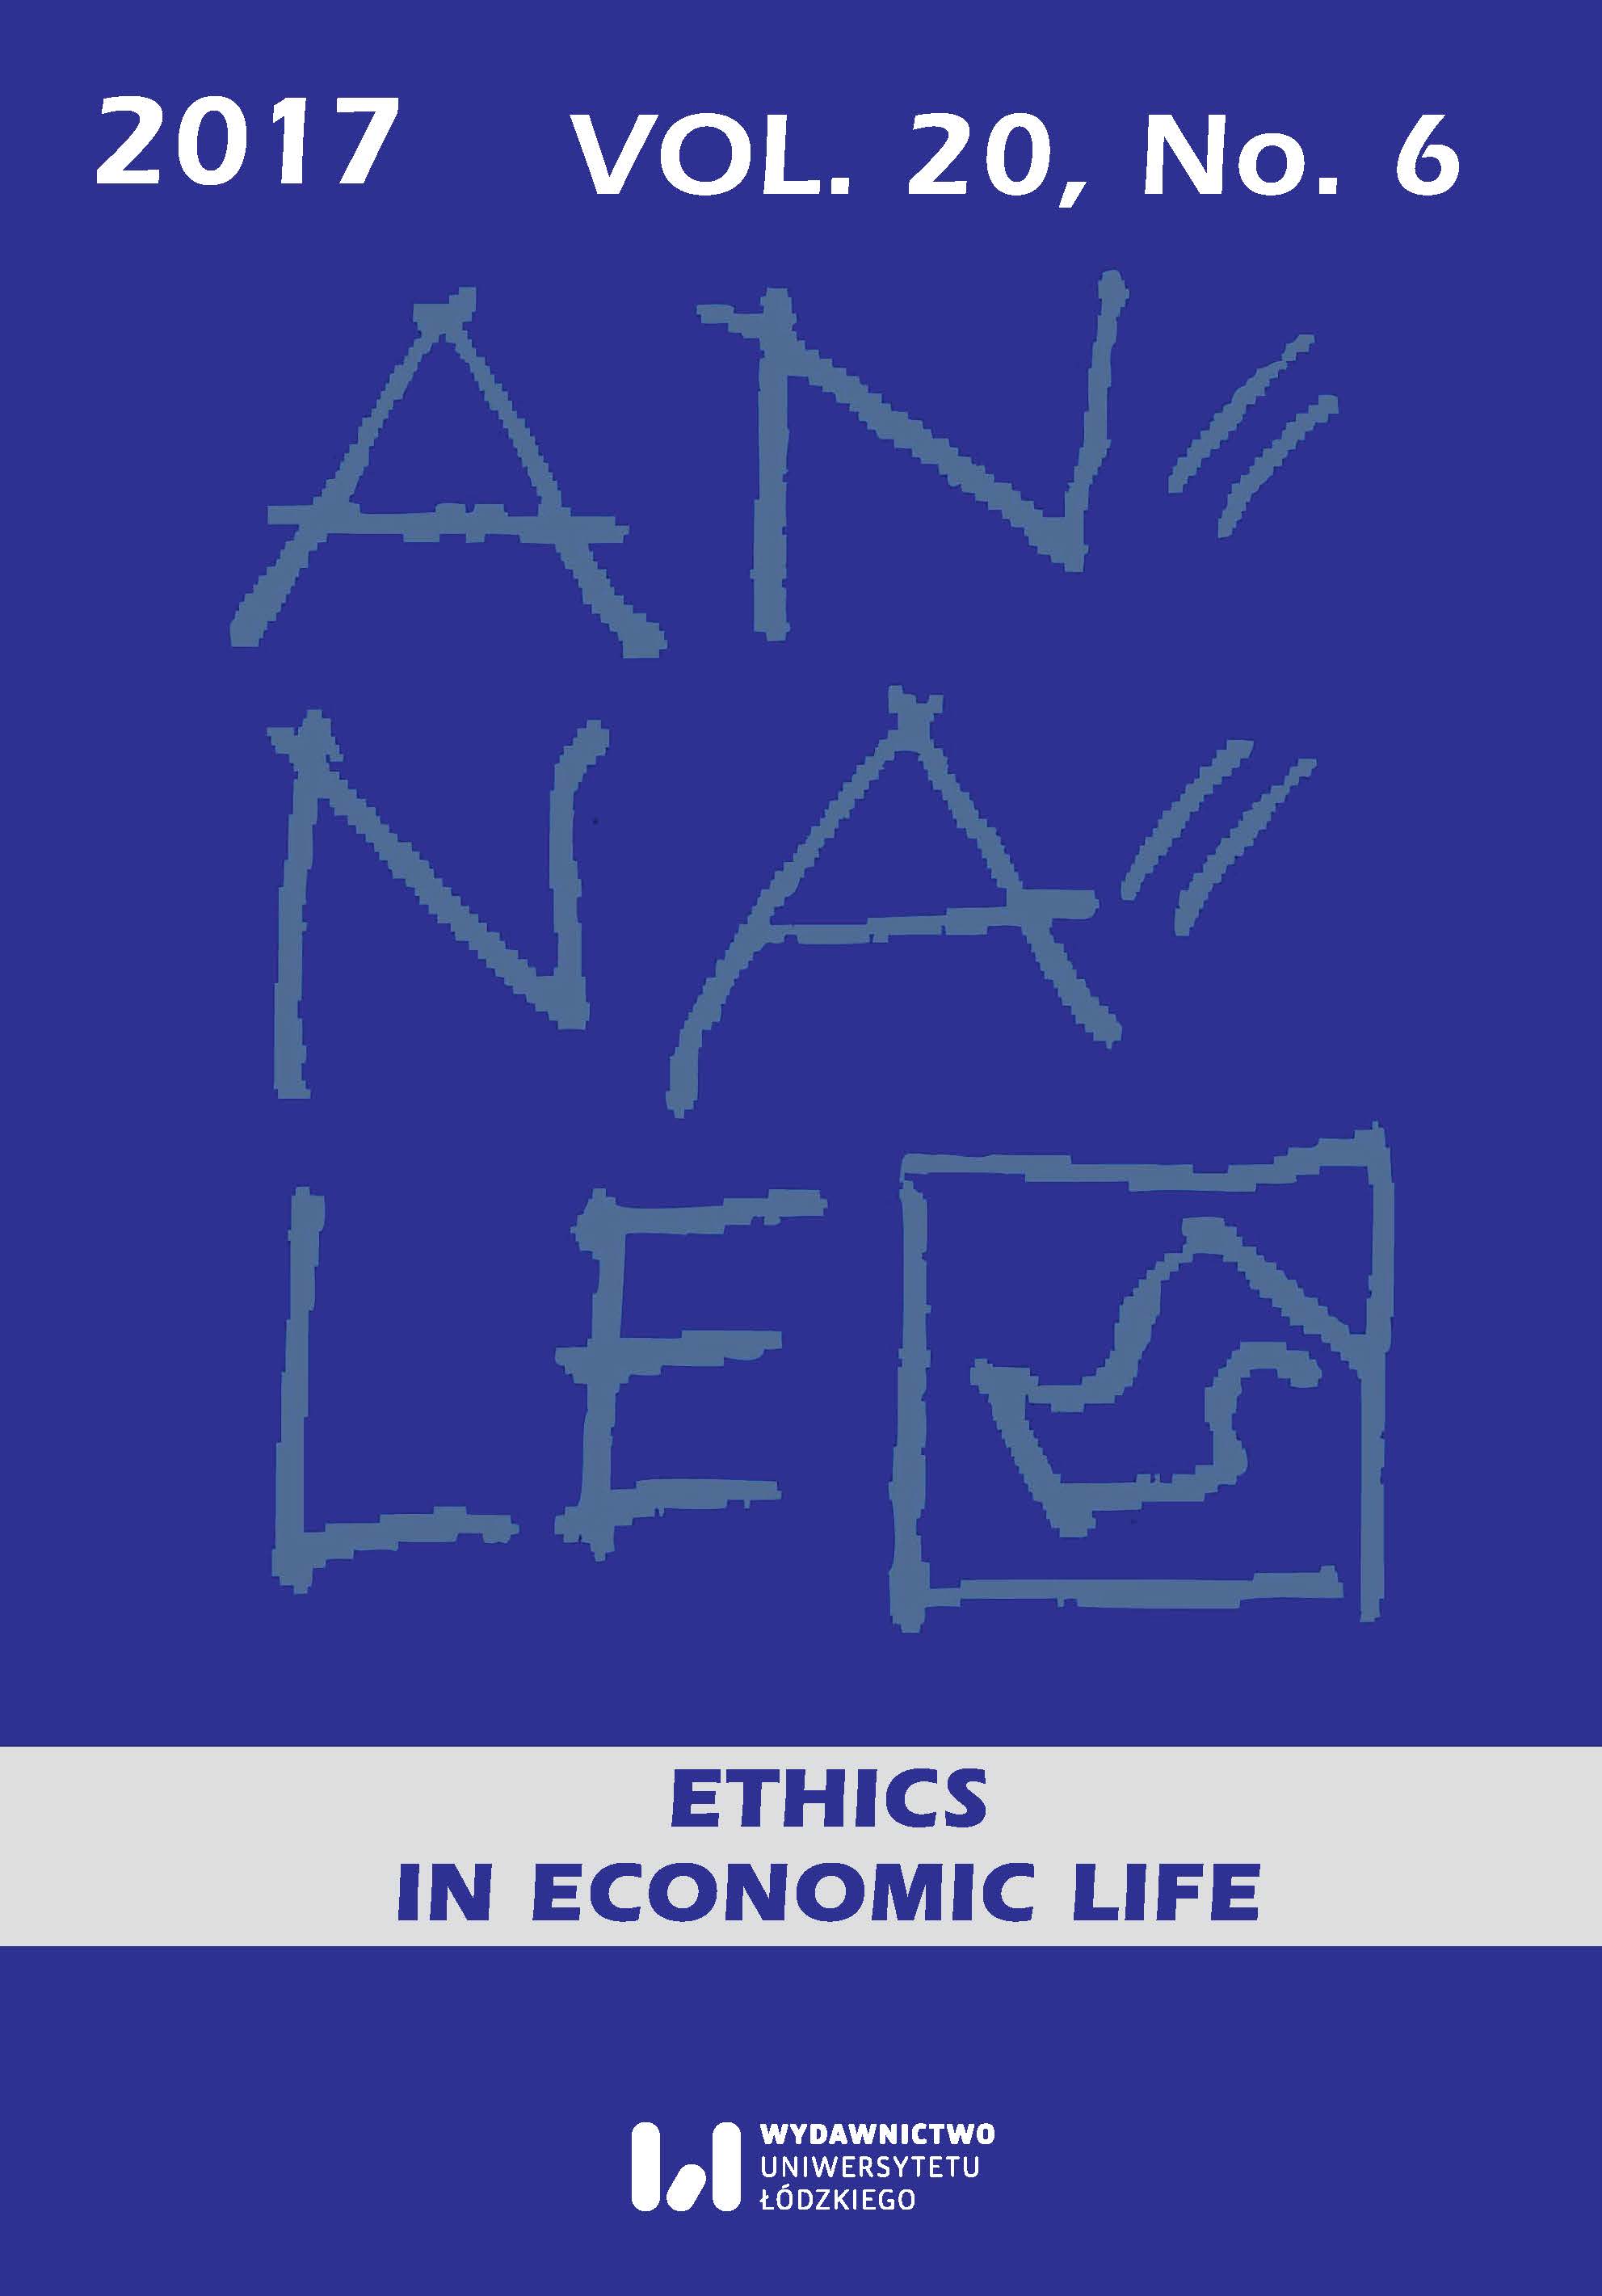 Amartya Kumar Sen’s ethical interpretation of poverty